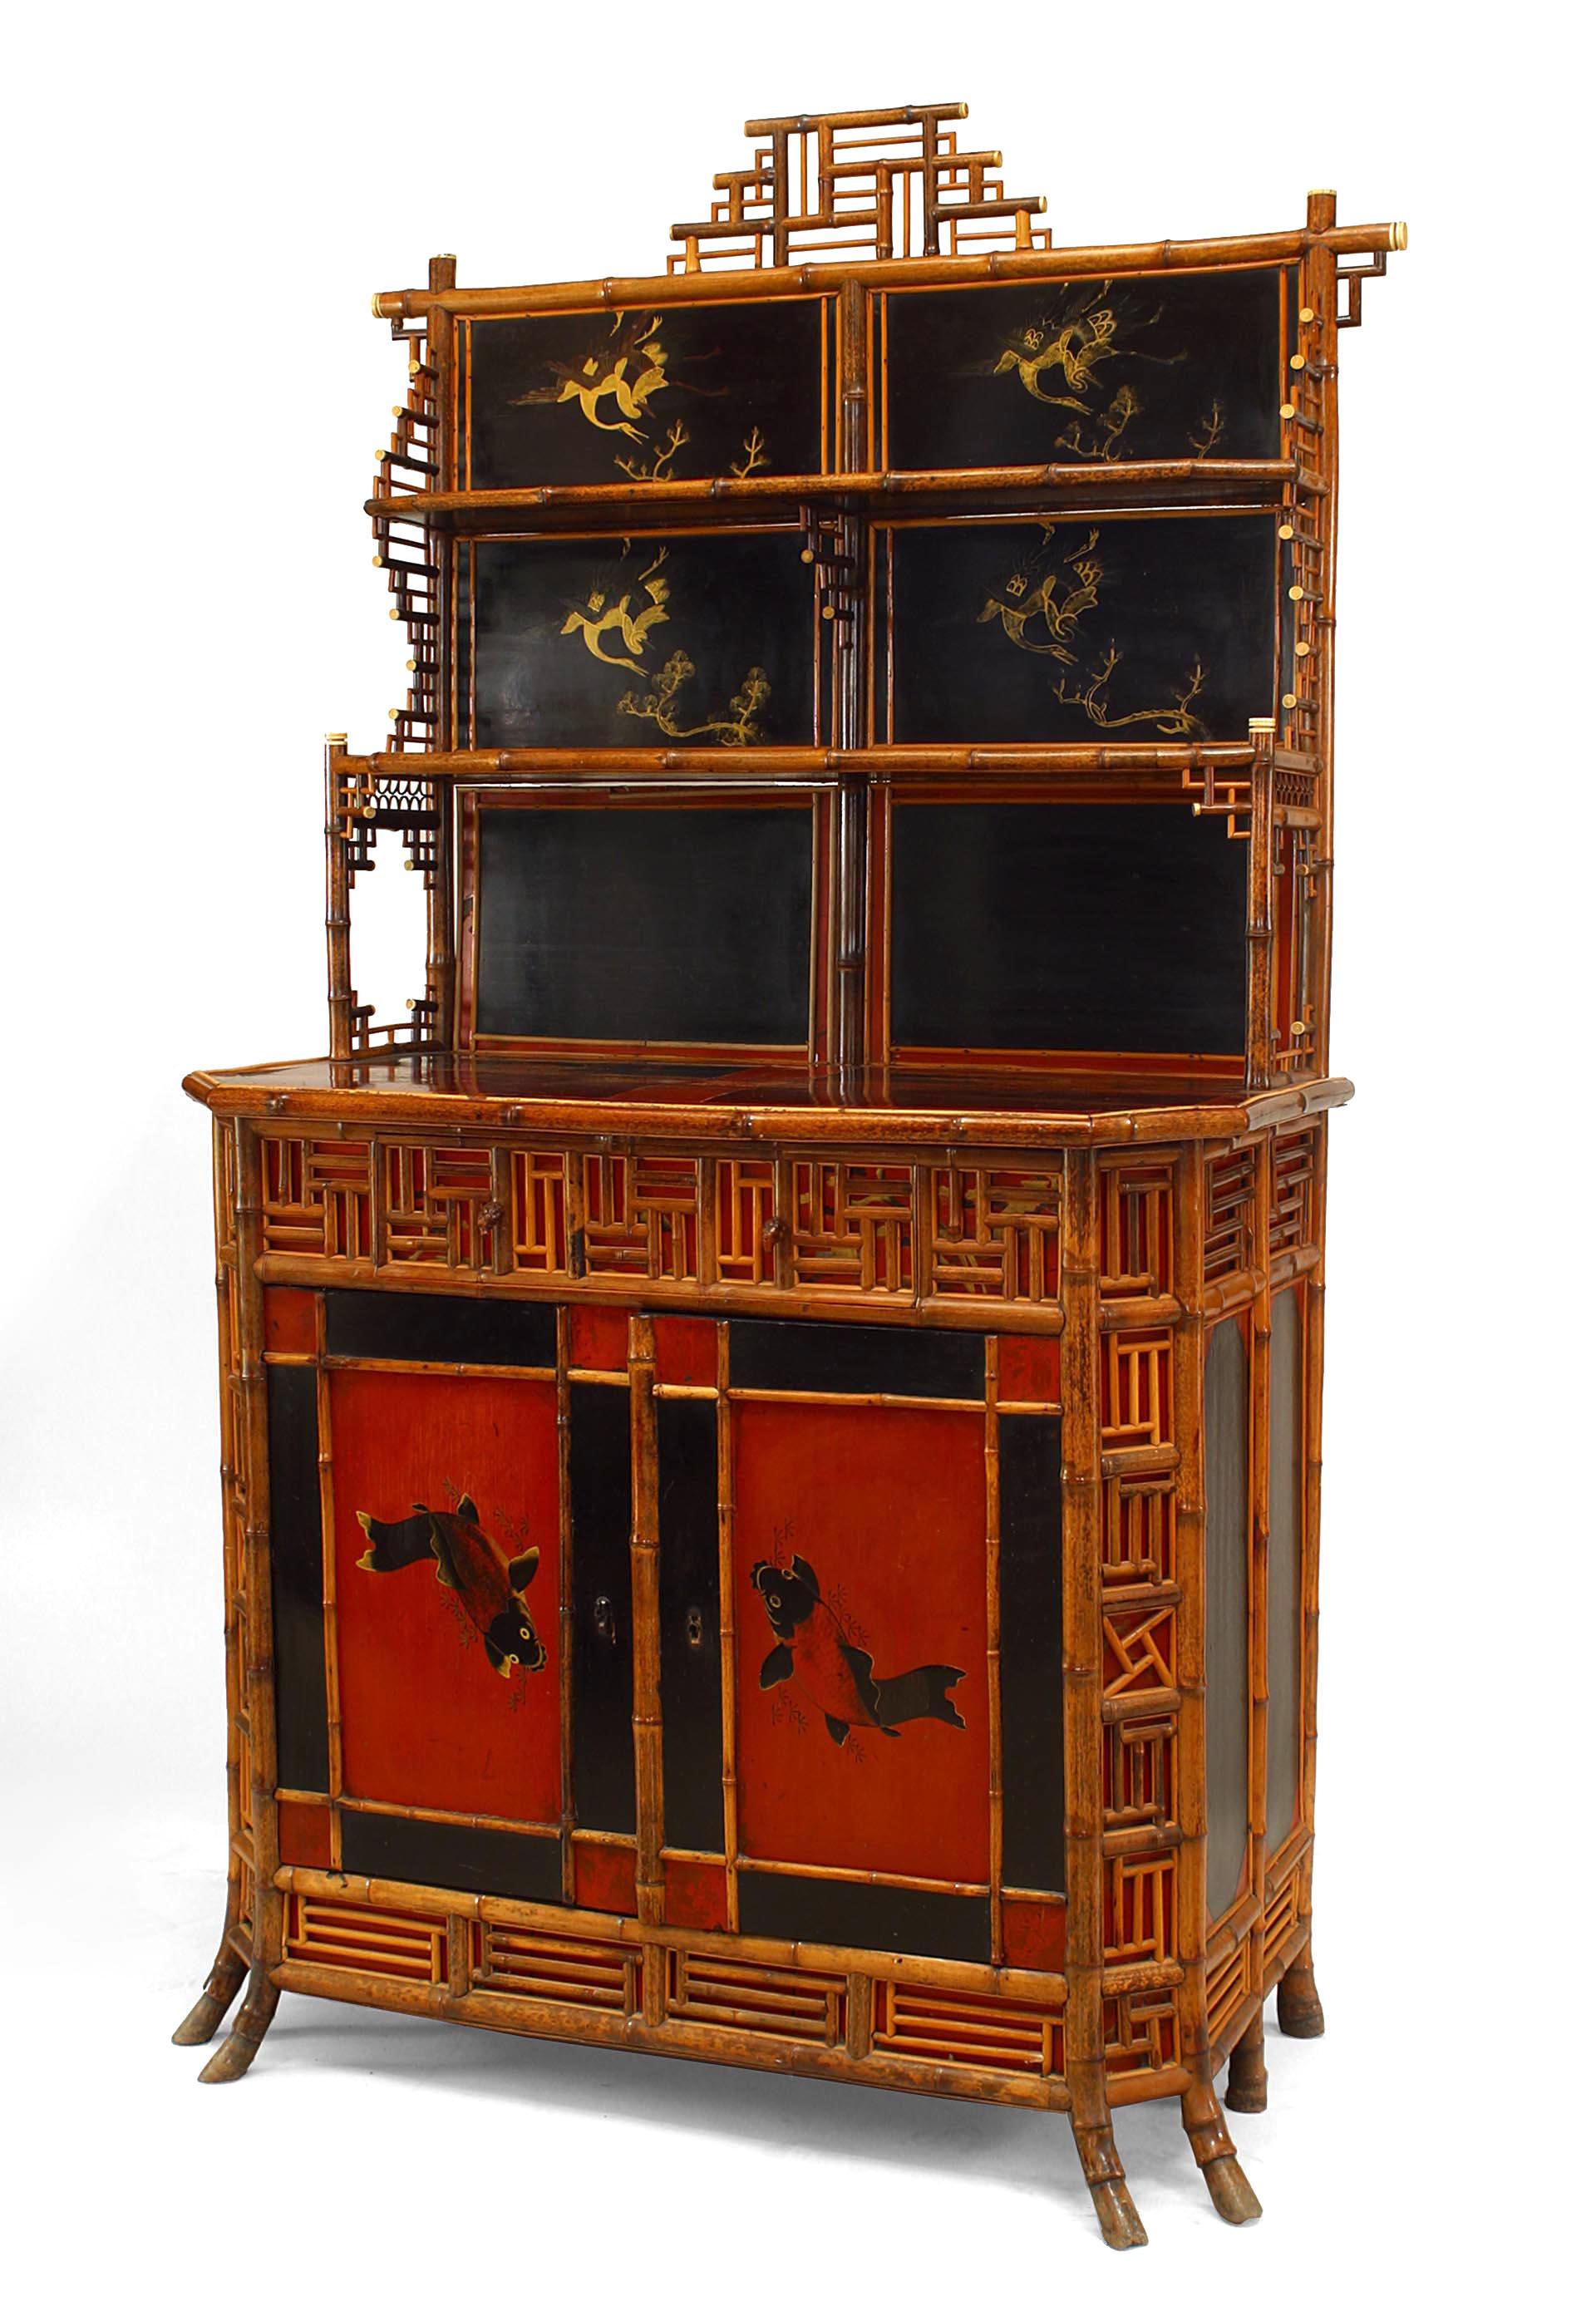 Meuble d'étagère en bambou laqué de style Regency anglais (19e siècle) avec panneaux incrustés sur 2 portes avant et tiroir et détails.
 